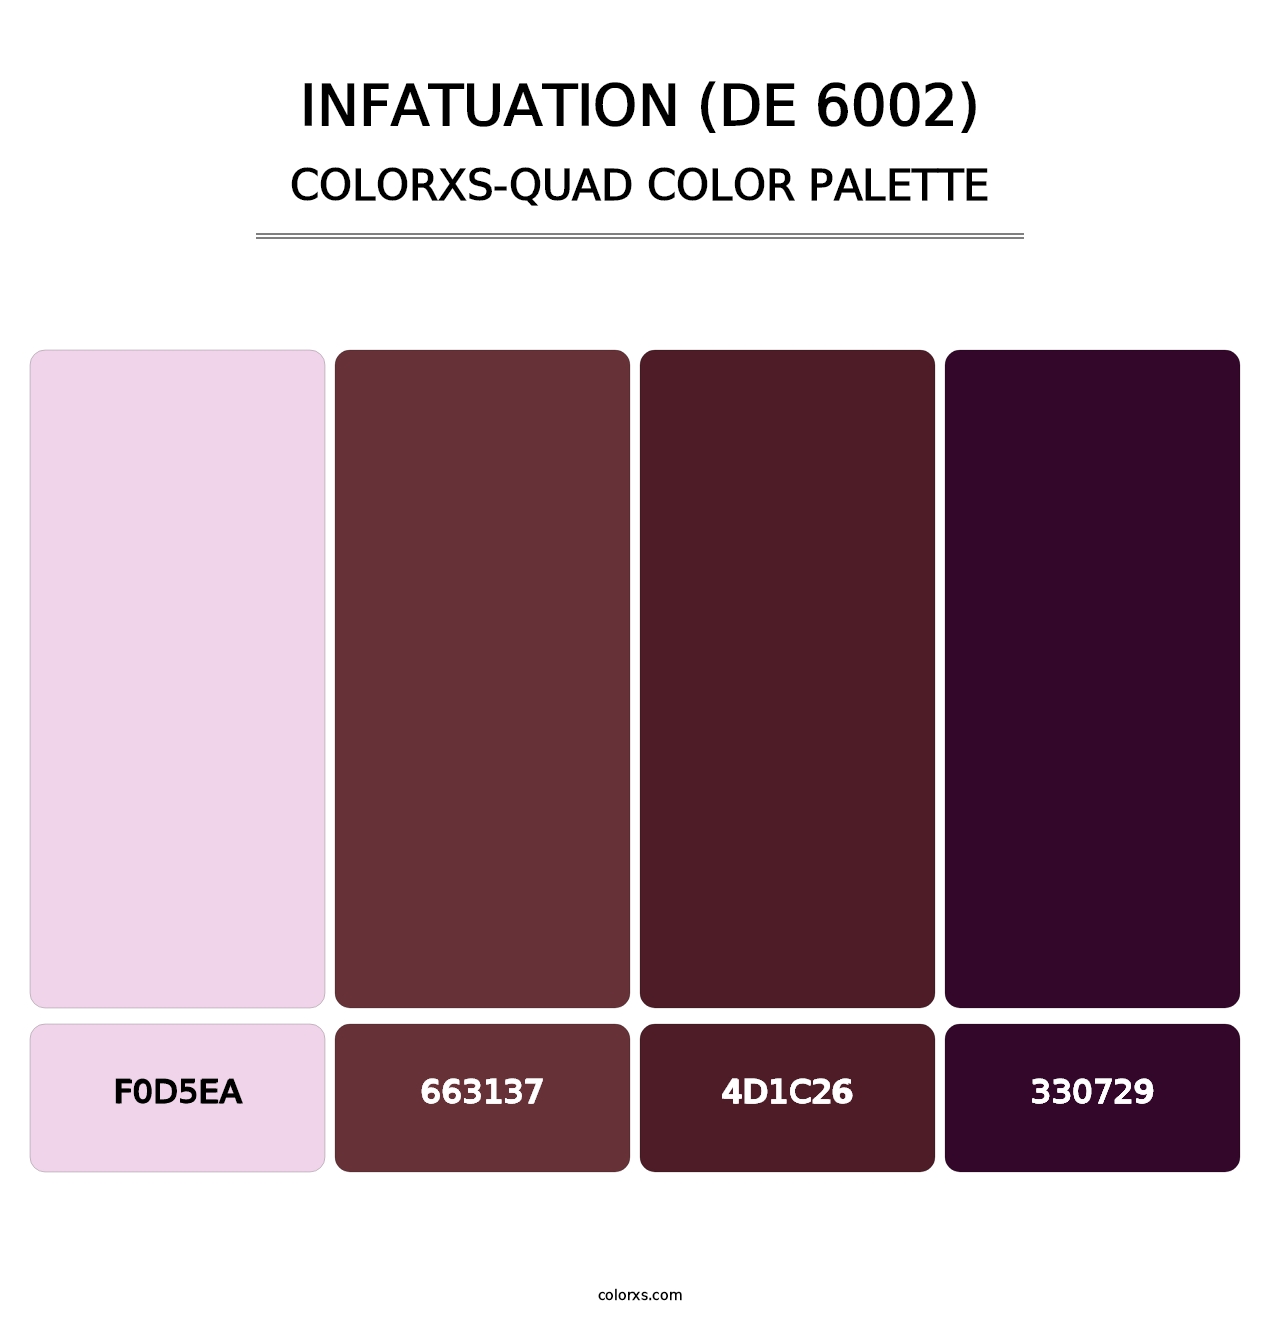 Infatuation (DE 6002) - Colorxs Quad Palette